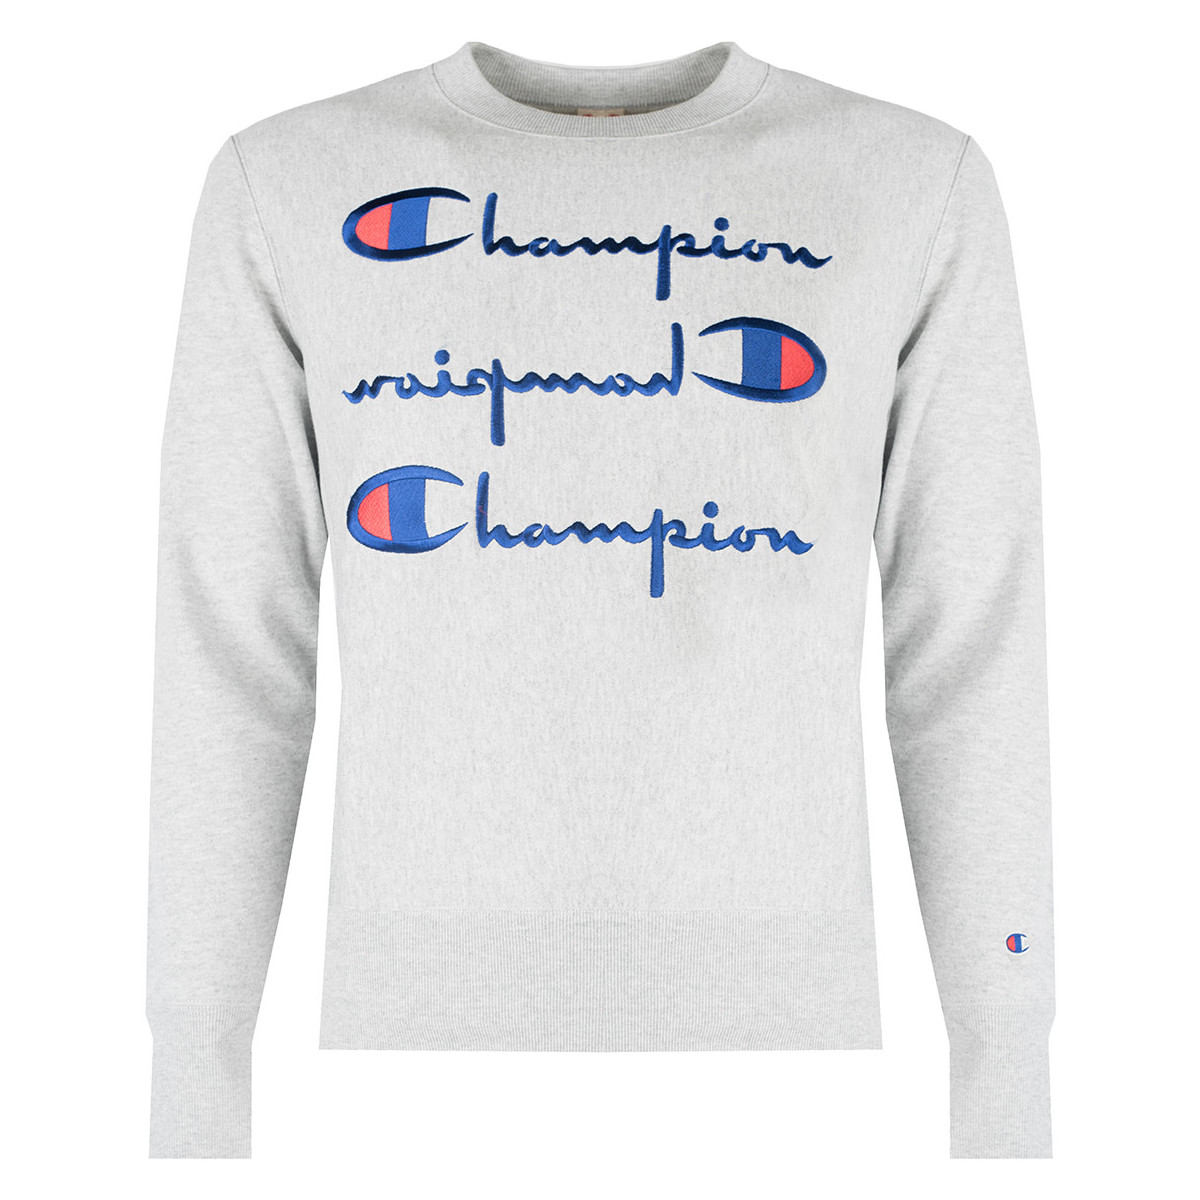 Kleidung Herren Sweatshirts Champion 210976 Grau